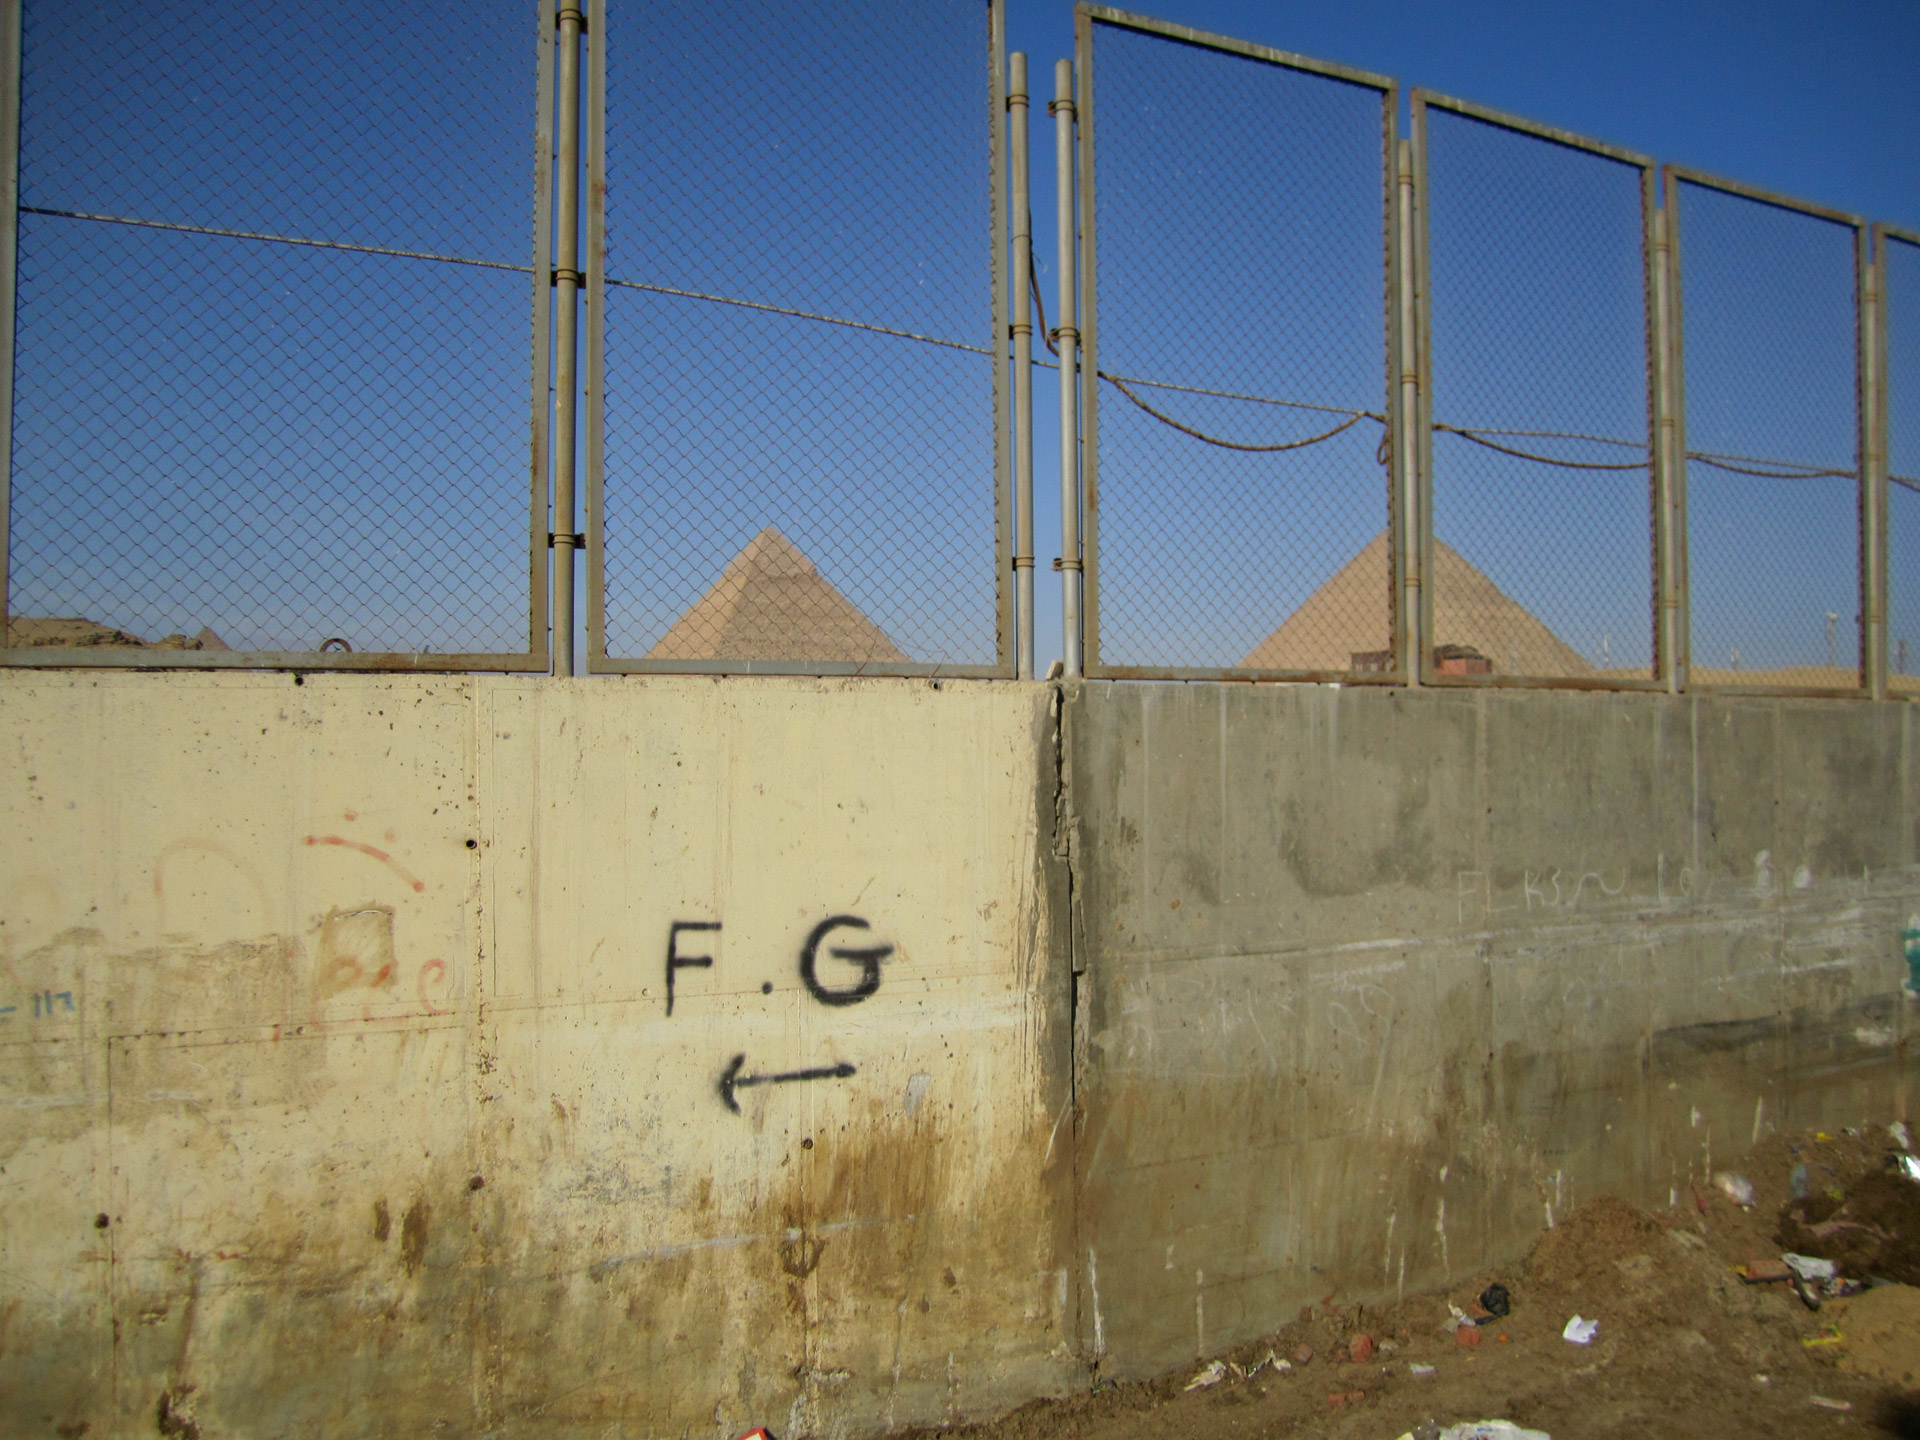 The pyramids through a fence